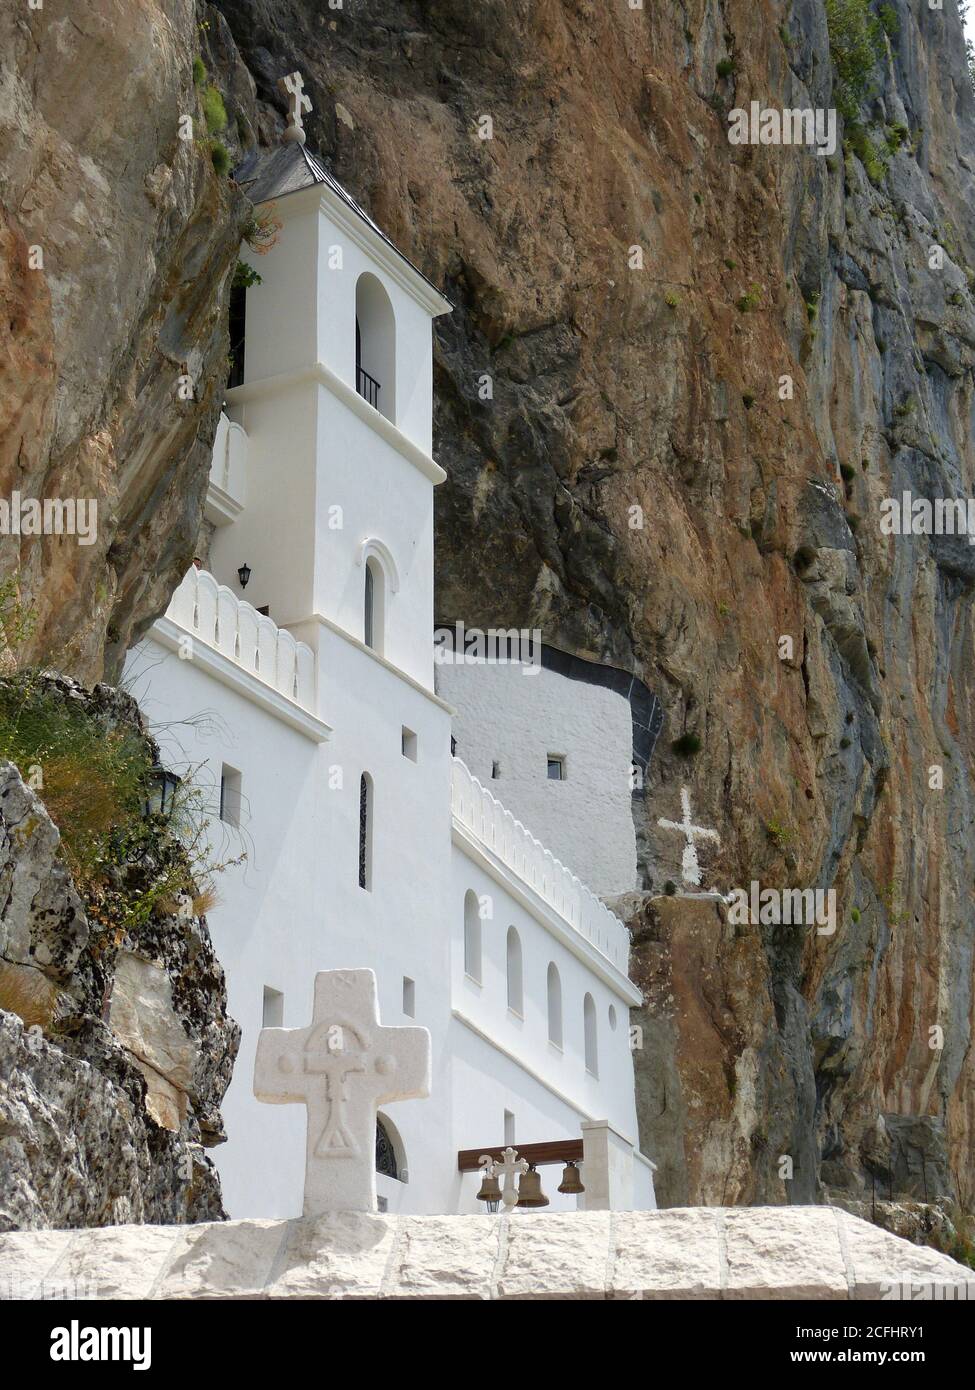 Ostrog ist das Kloster der Serbisch-Orthodoxen Kirche vor einem fast vertikalen Hintergrund, hoch oben im großen Felsen Ostroska Greda, Montenegro. Stockfoto